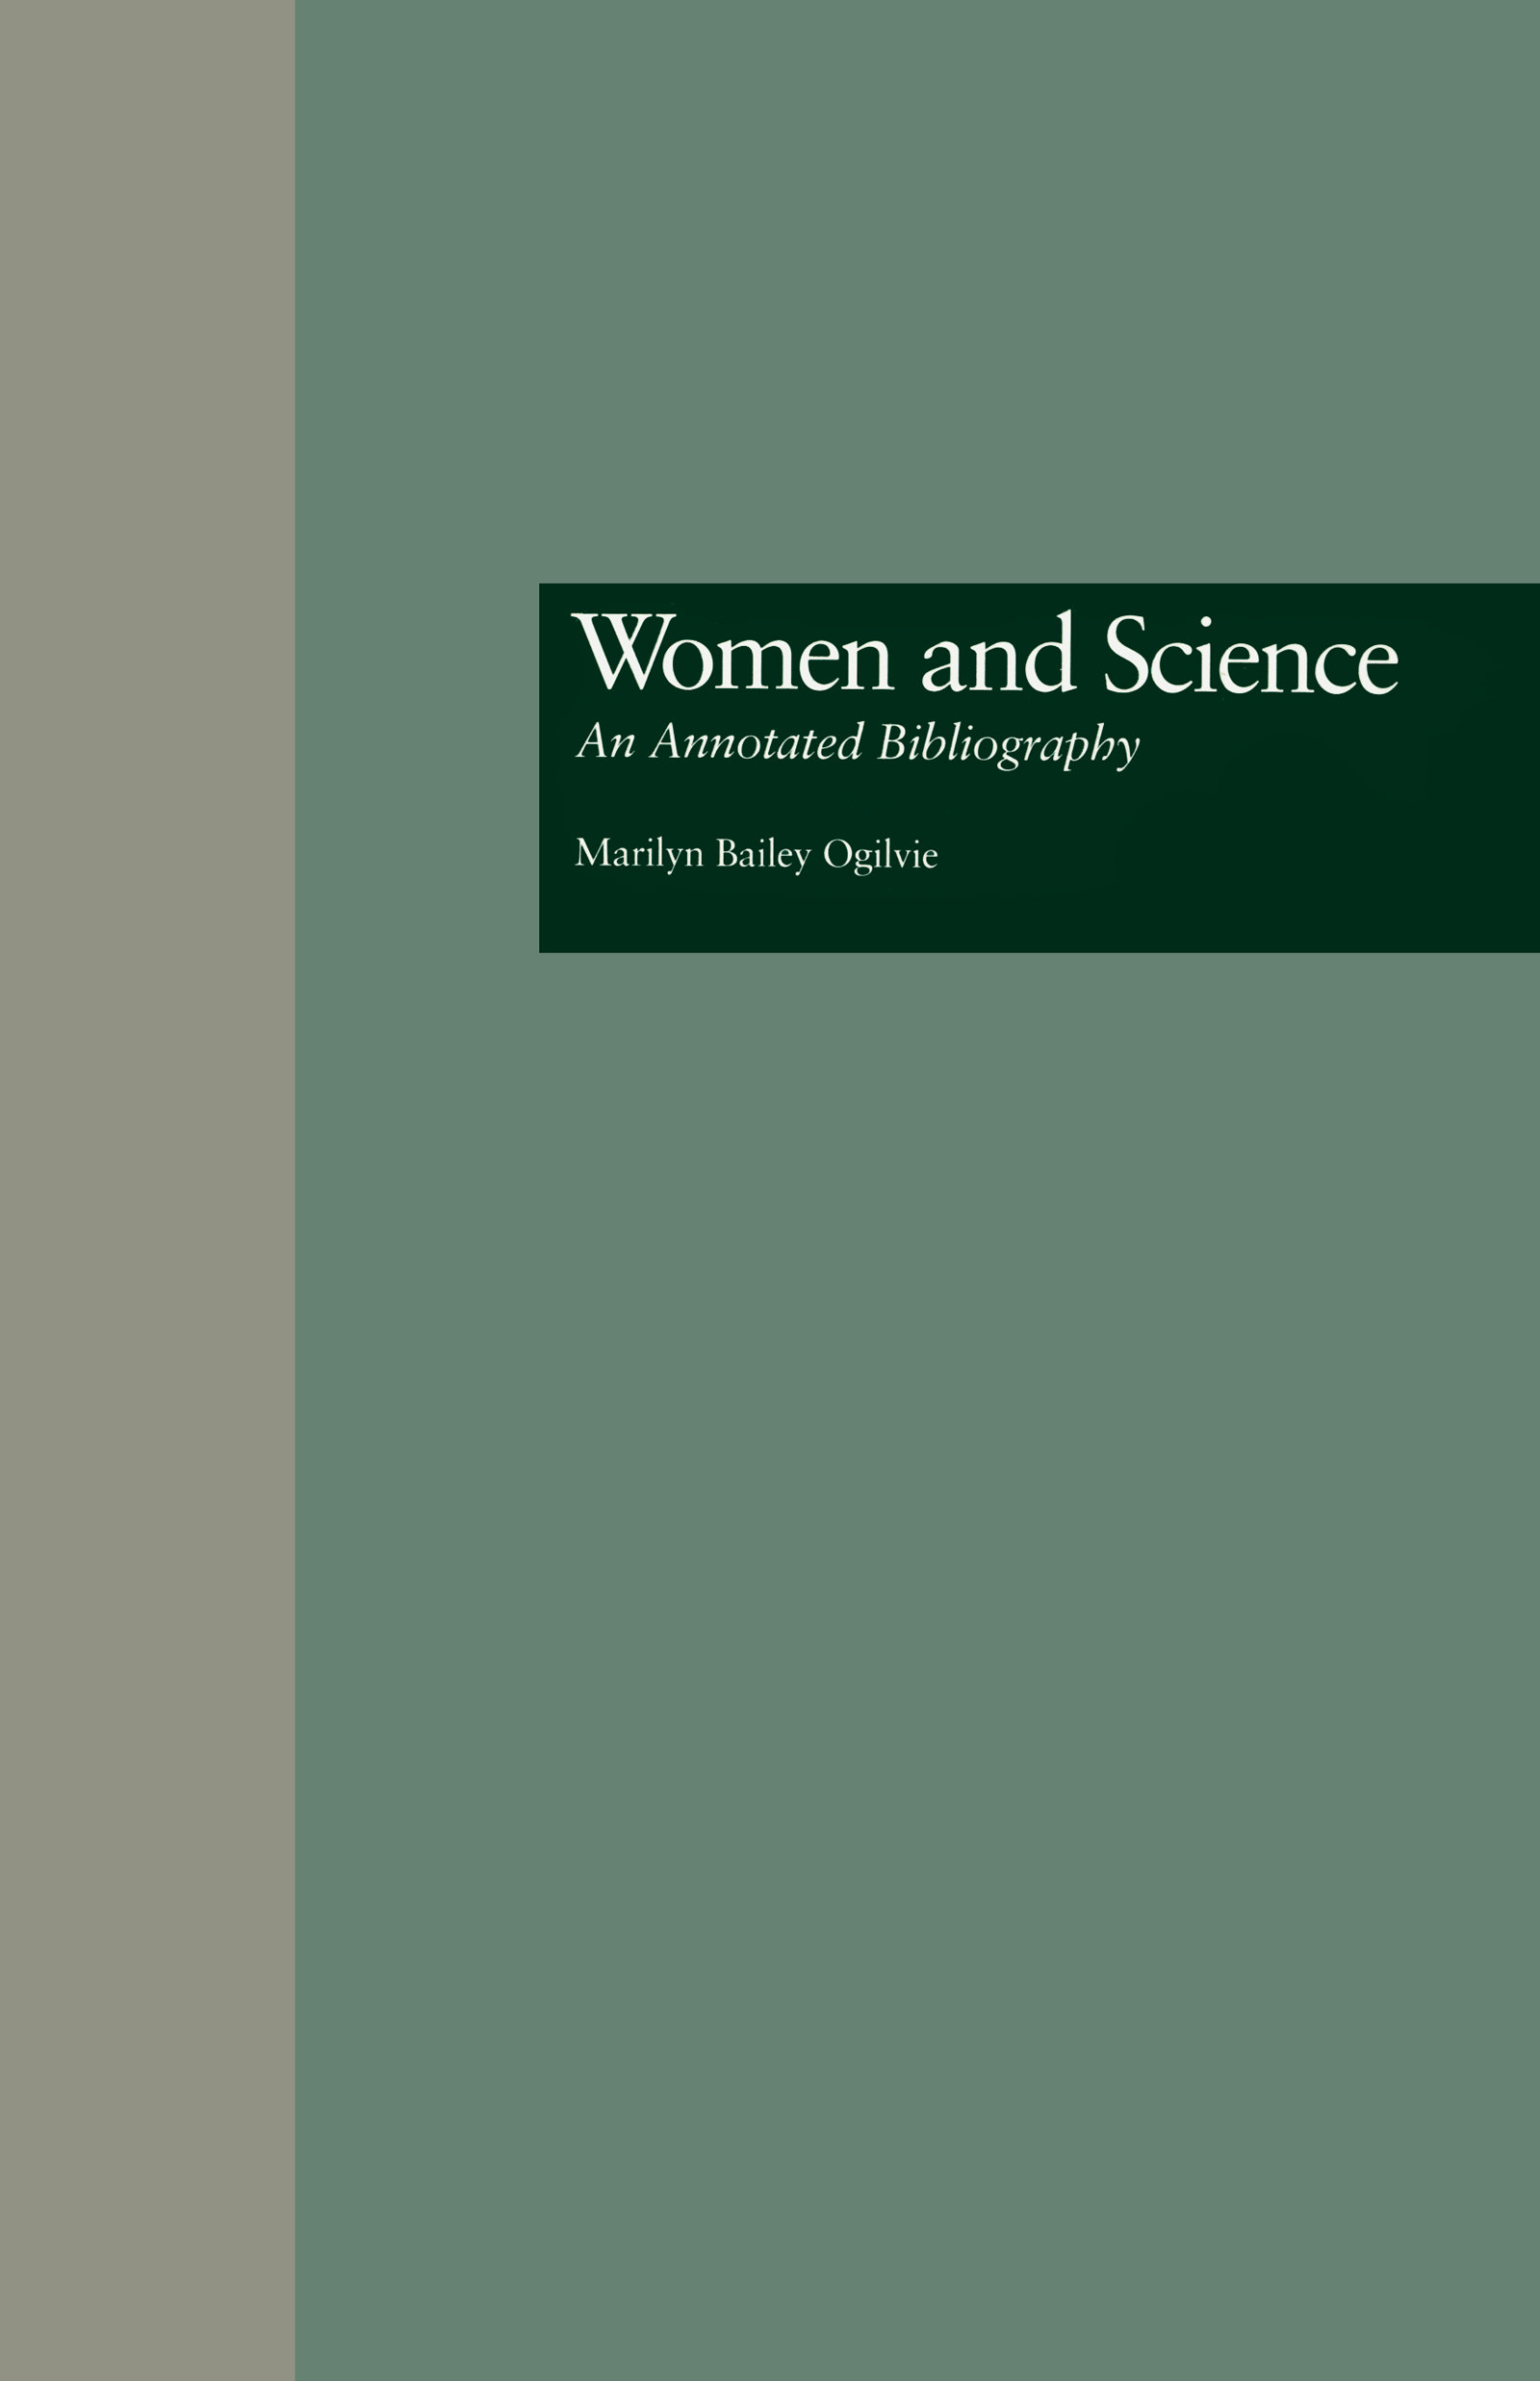 Women and Science - Marilyn B. Ogilvie Kerry L. Meek